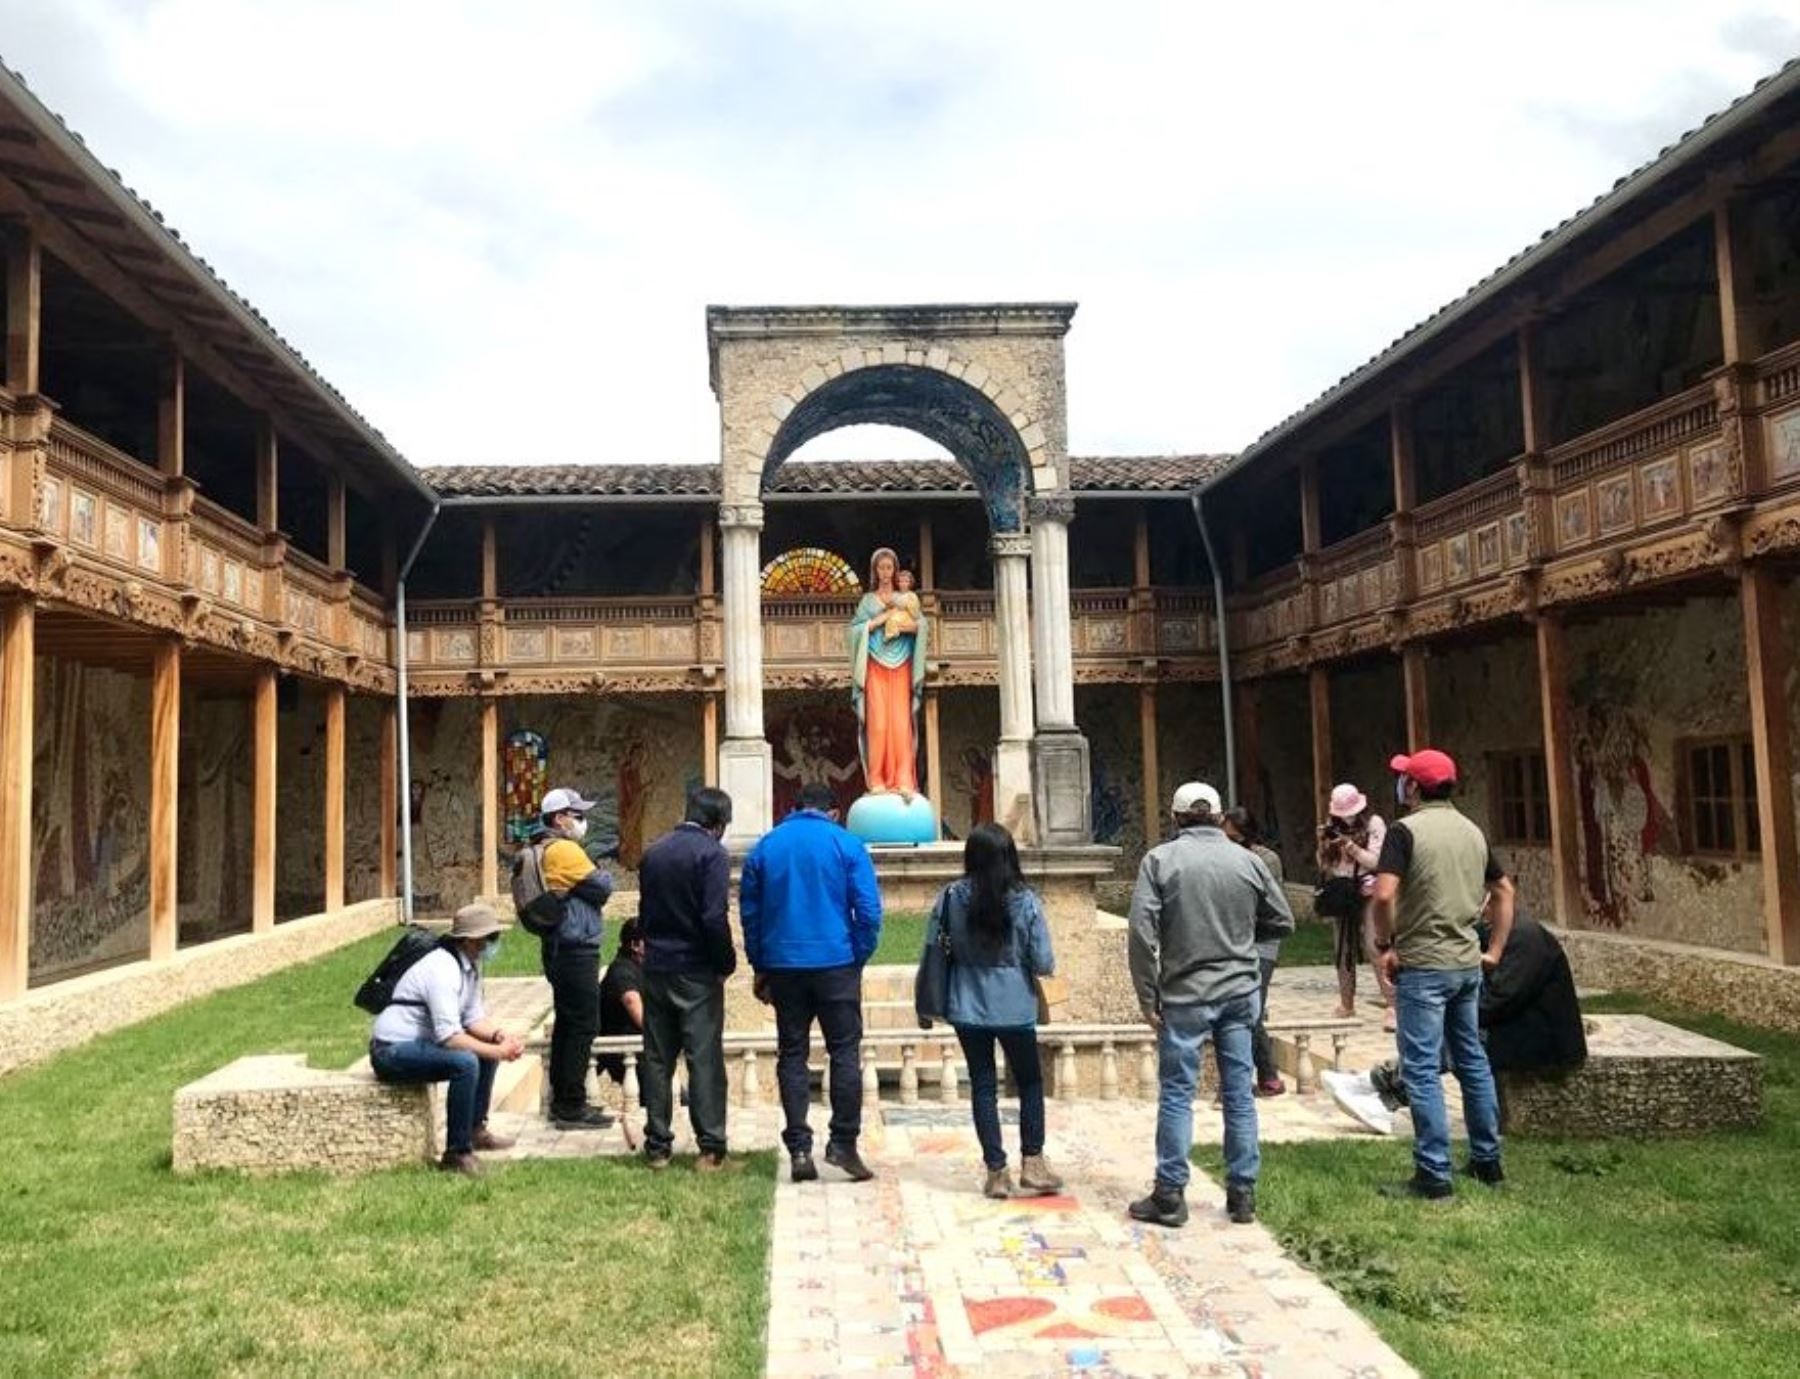 El majestuoso Santuario de Polloc, ubicado en Cajamarca, última la implementación del protocolo sanitario y se prepara para recibir a turistas desde este fin de semana. Foto: Eduard Lozano